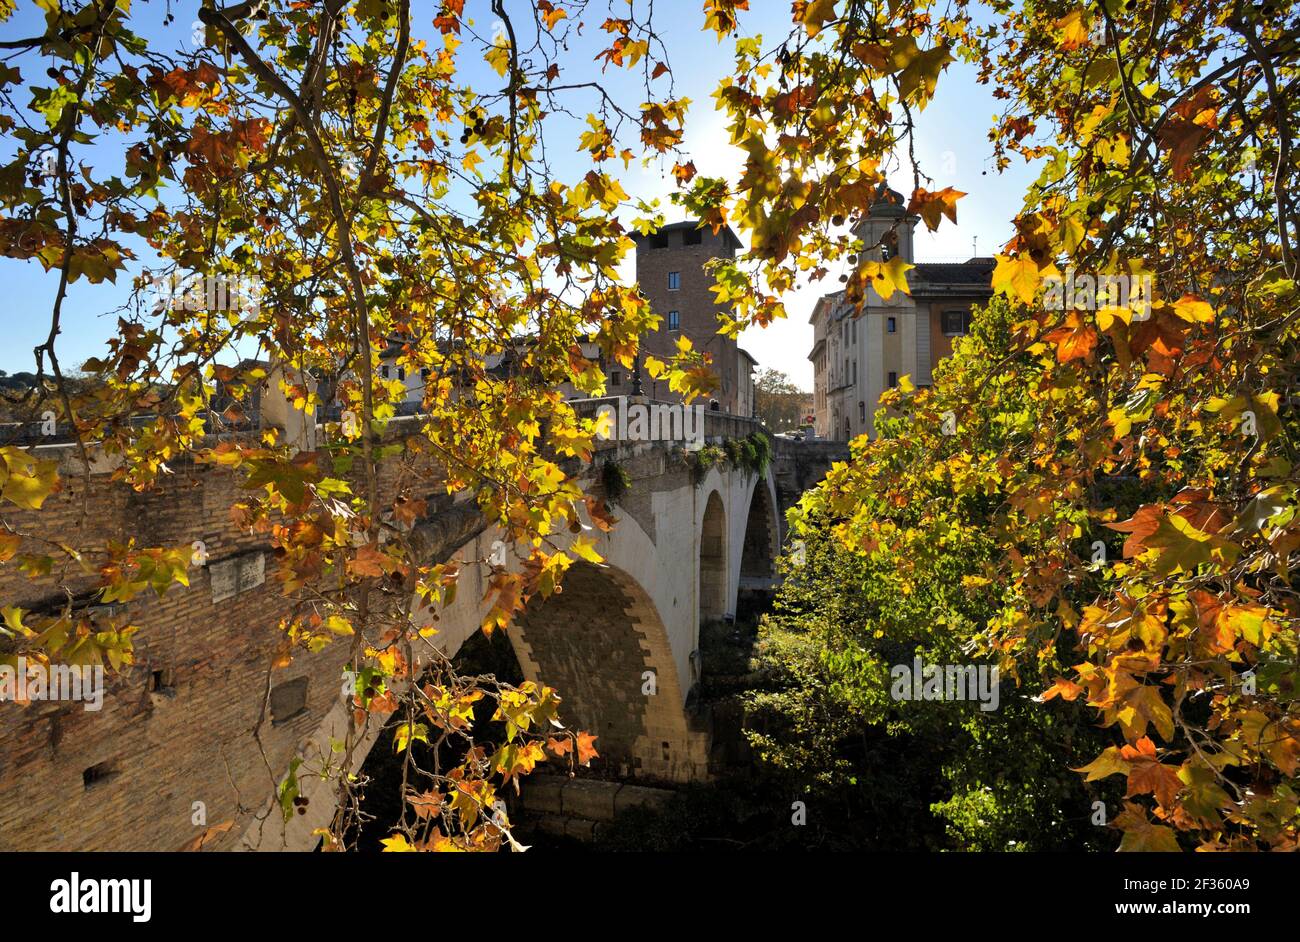 italy, rome, tiber river, pons fabricius bridge in autumn Stock Photo